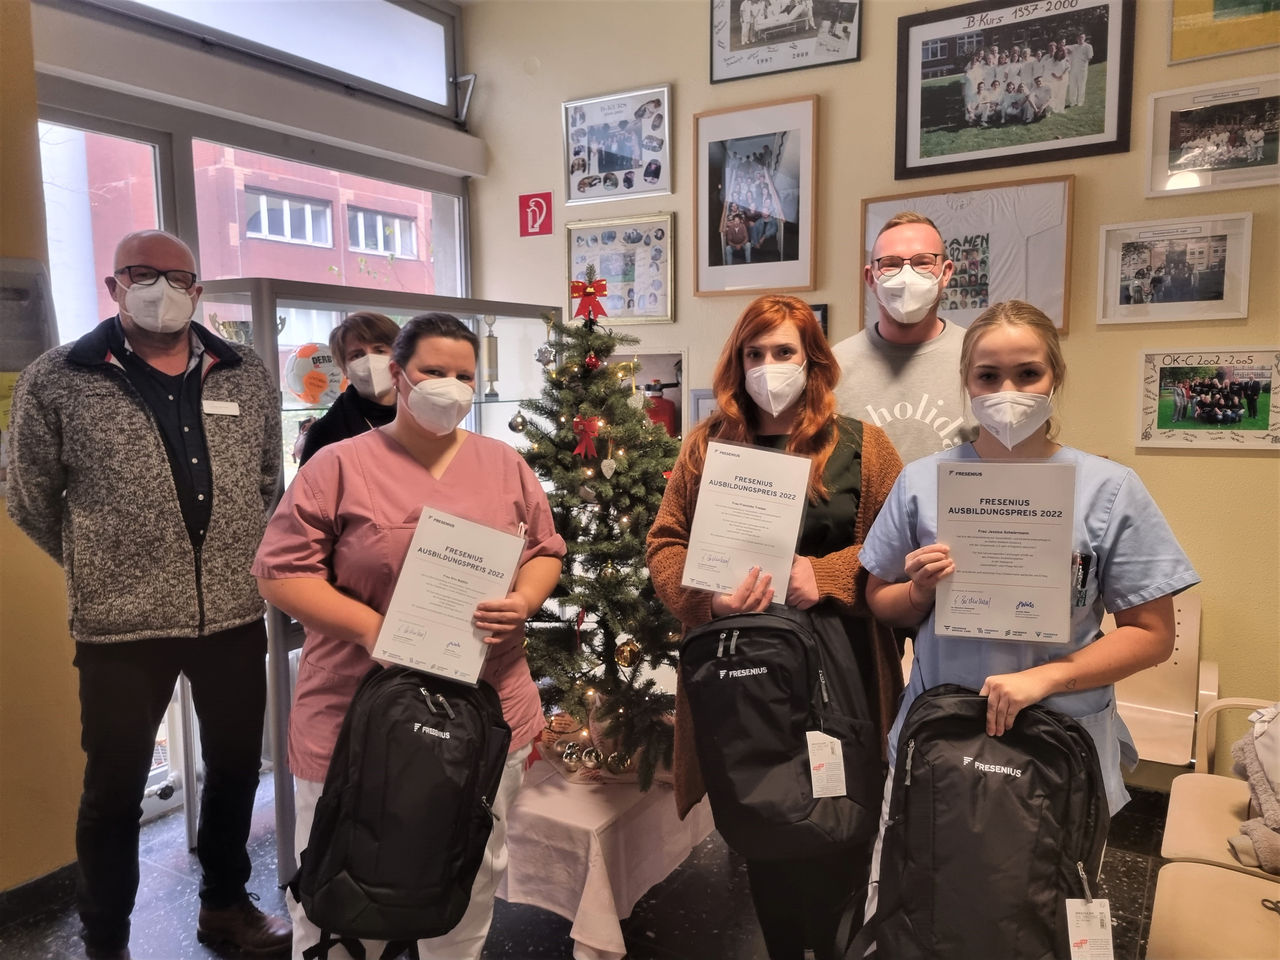  Fresenius-Ausbildungspreis: Duisburger Pflegeabsolventinnen gehören zu den Besten ihres Jahrgangs